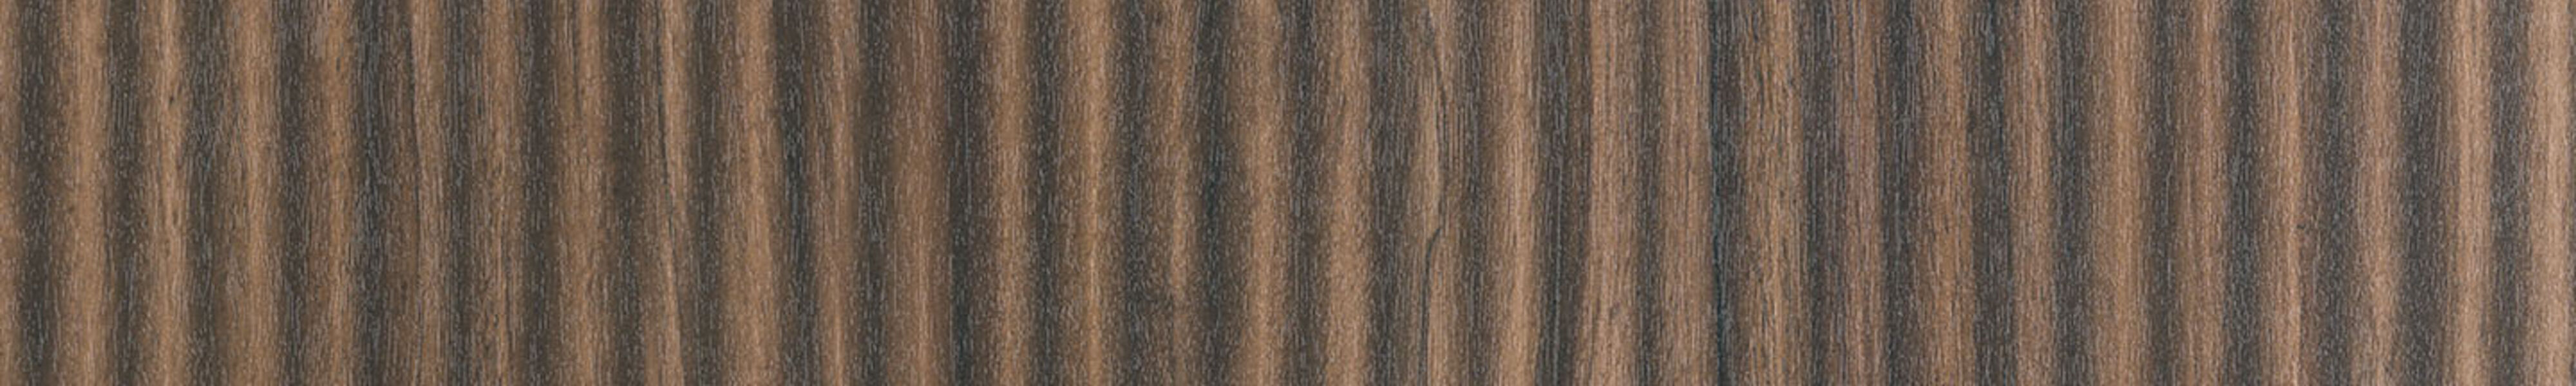 skai® structure Milano dark brown       L 0,43 1440